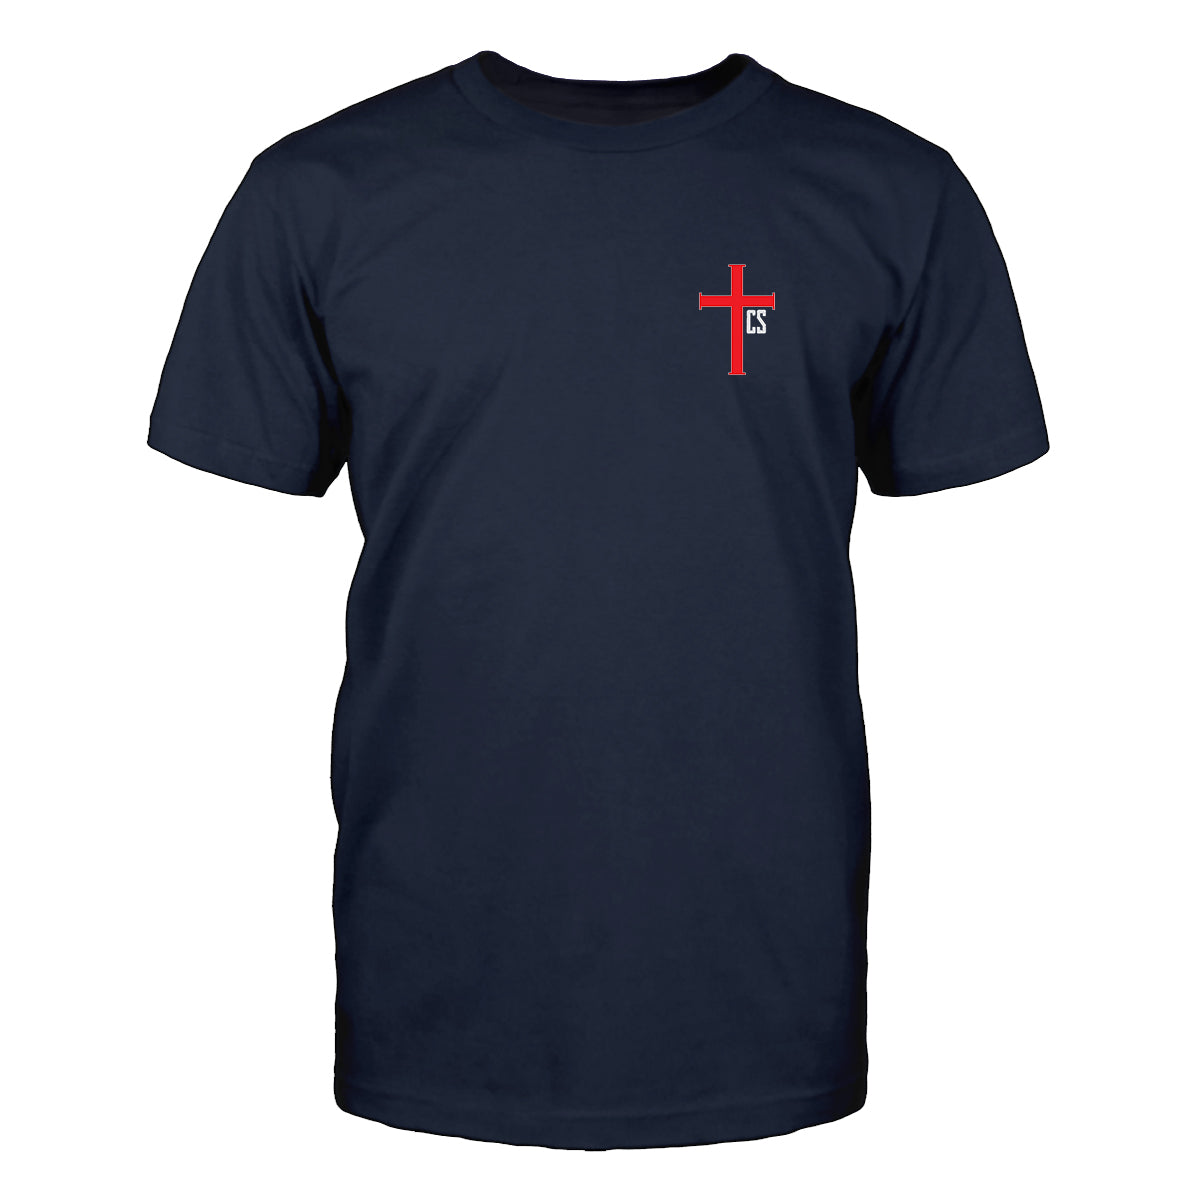 Warrior of Christ T-Shirt